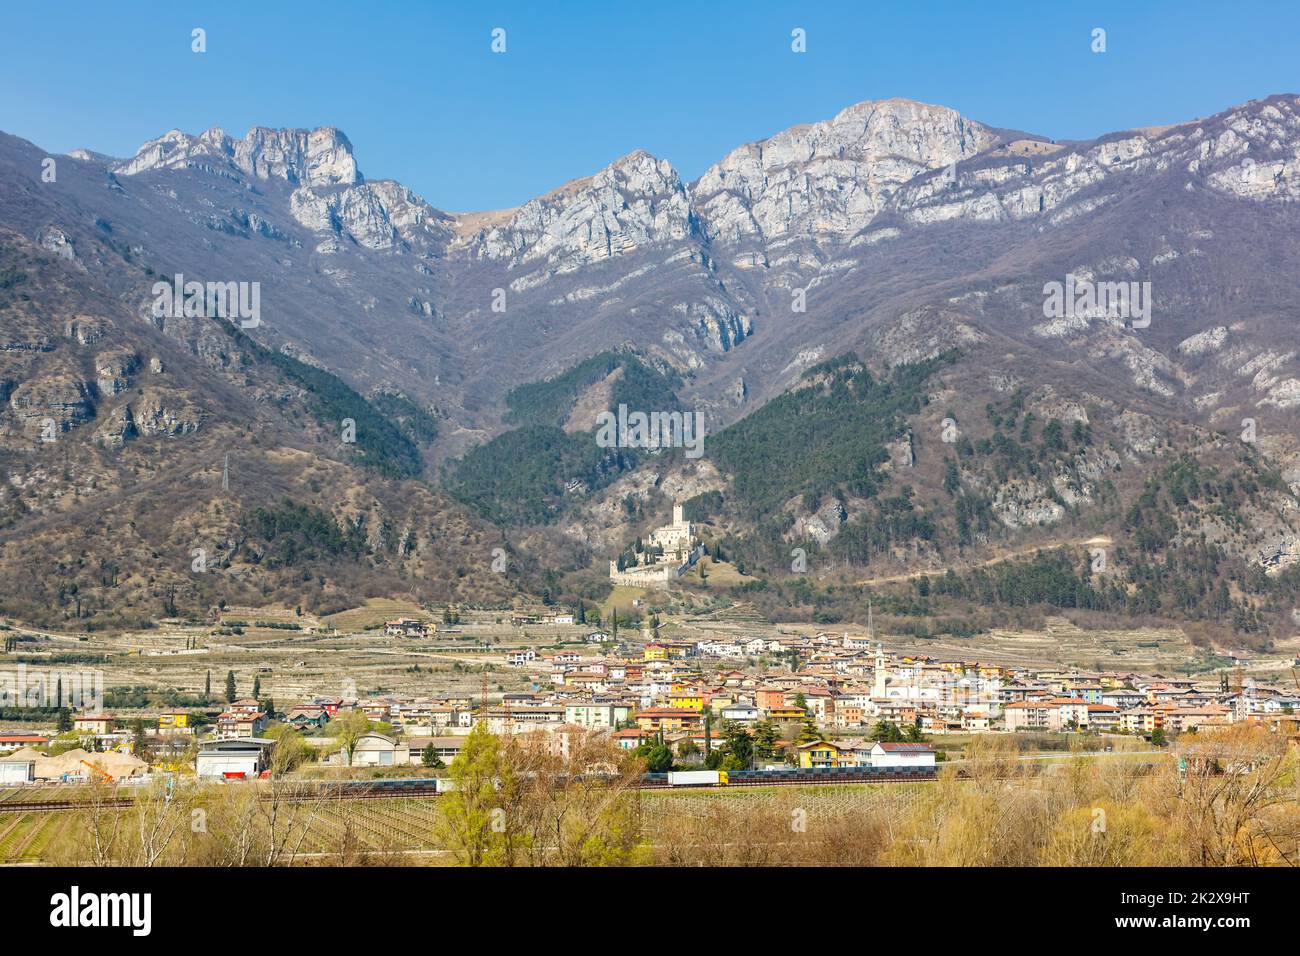 Castello di Avio castle landscape scenery Trento province Alps mountains in Italy Stock Photo